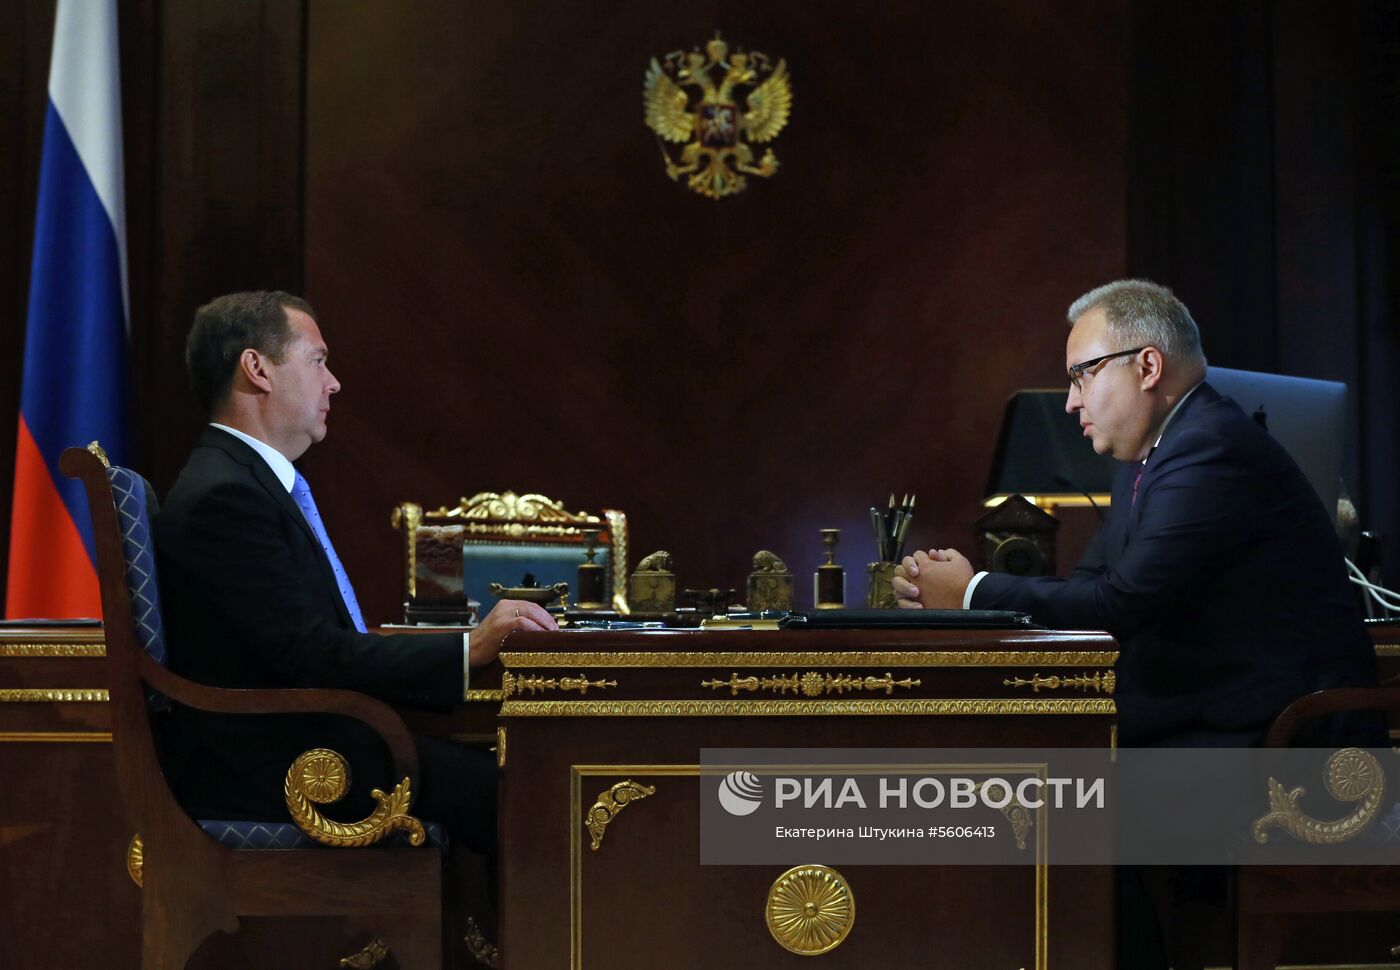 Премьер-министр РФ Д. Медведев встретился с главой ПАО "ФСК ЕЭС" А. Муровым